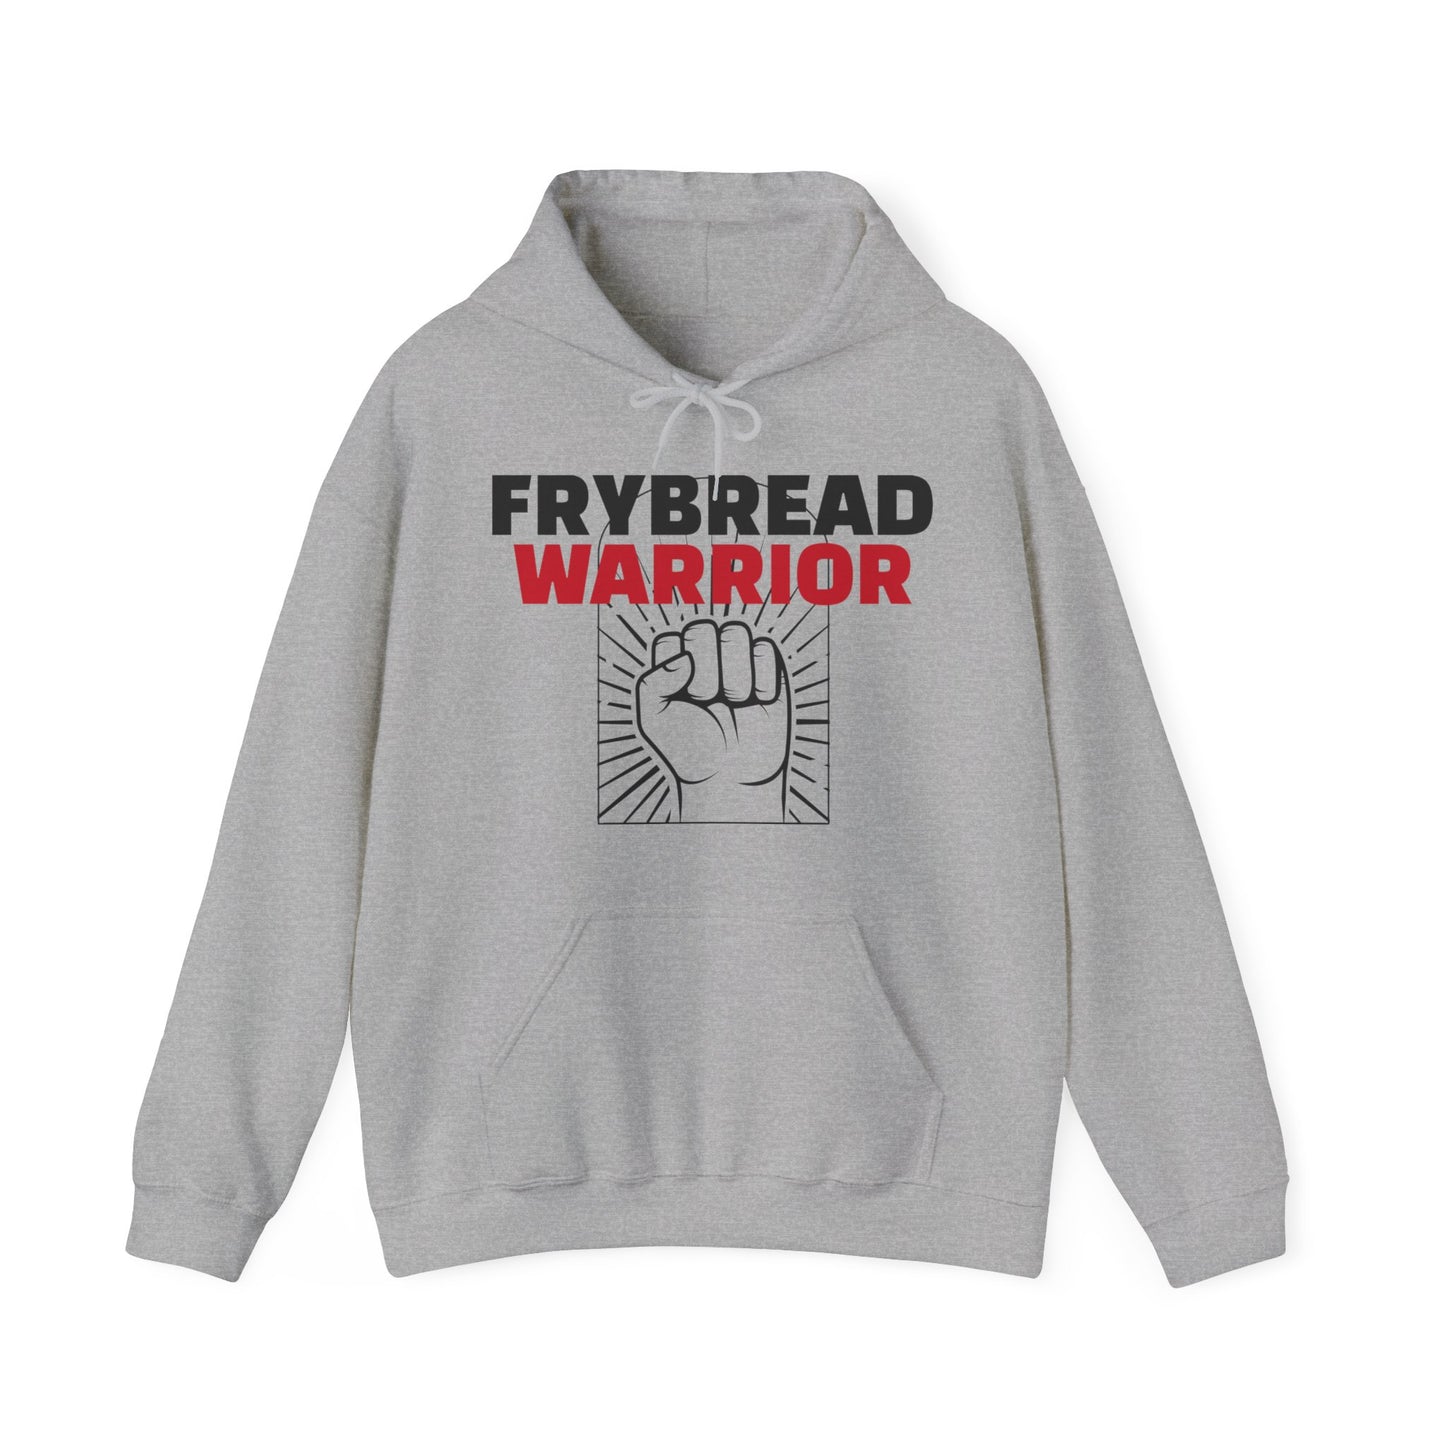 Frybread Warrior Hooded Sweatshirt